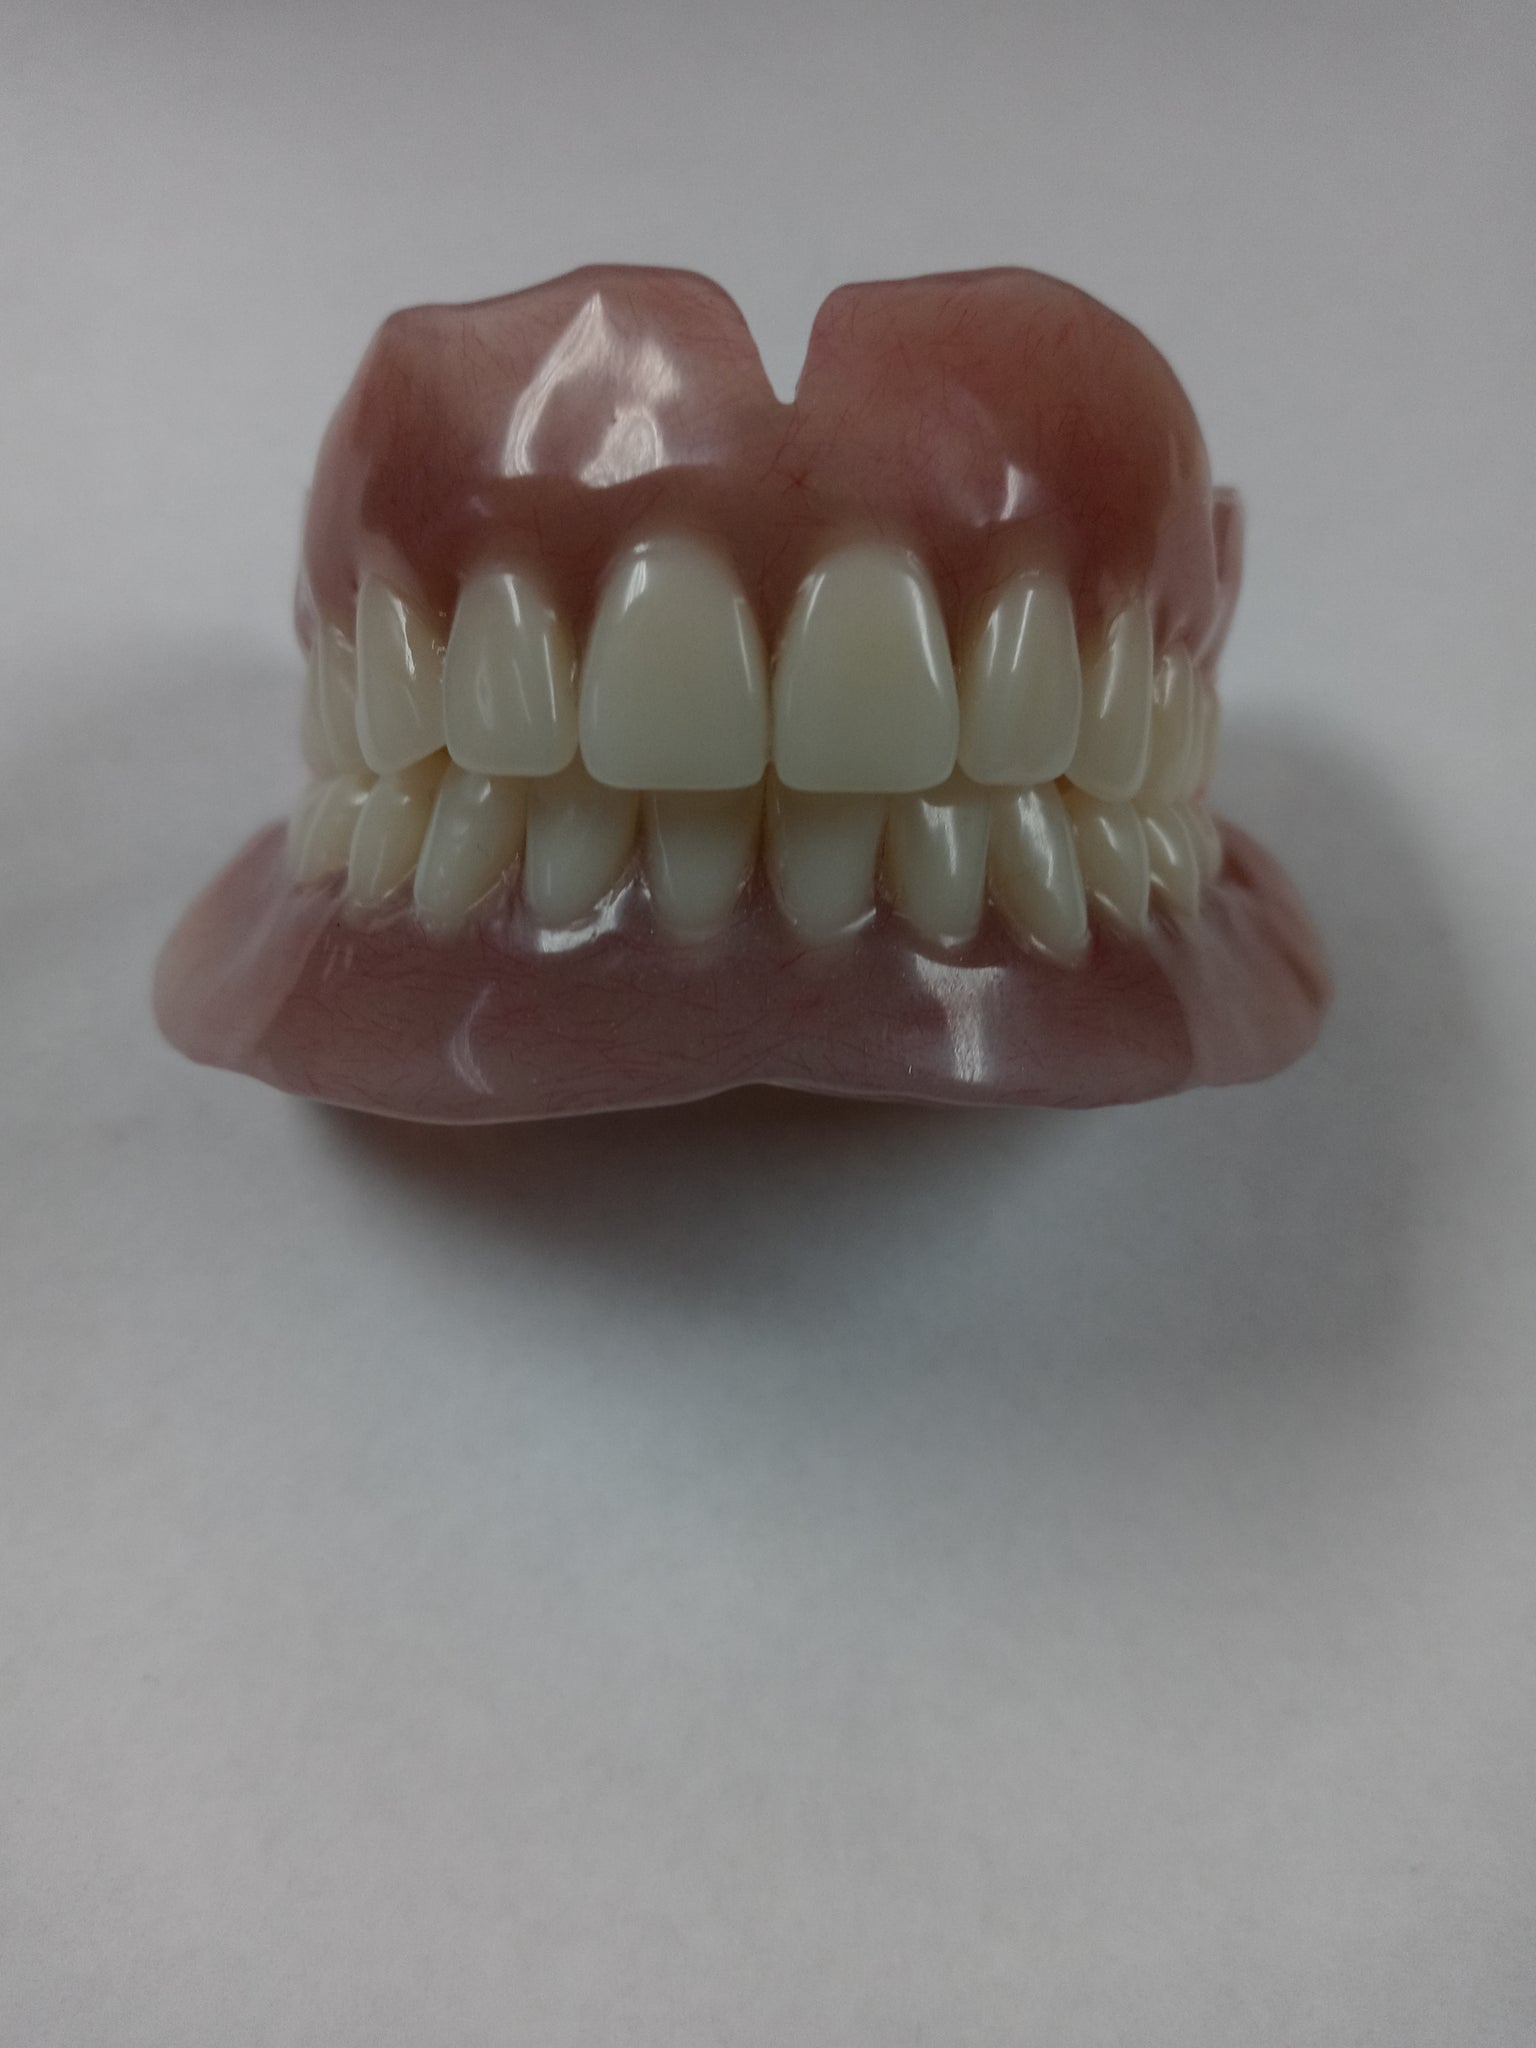 Acrylic teeth -Veneer Kit / Shade A2 False teeth / Temporary Tooth